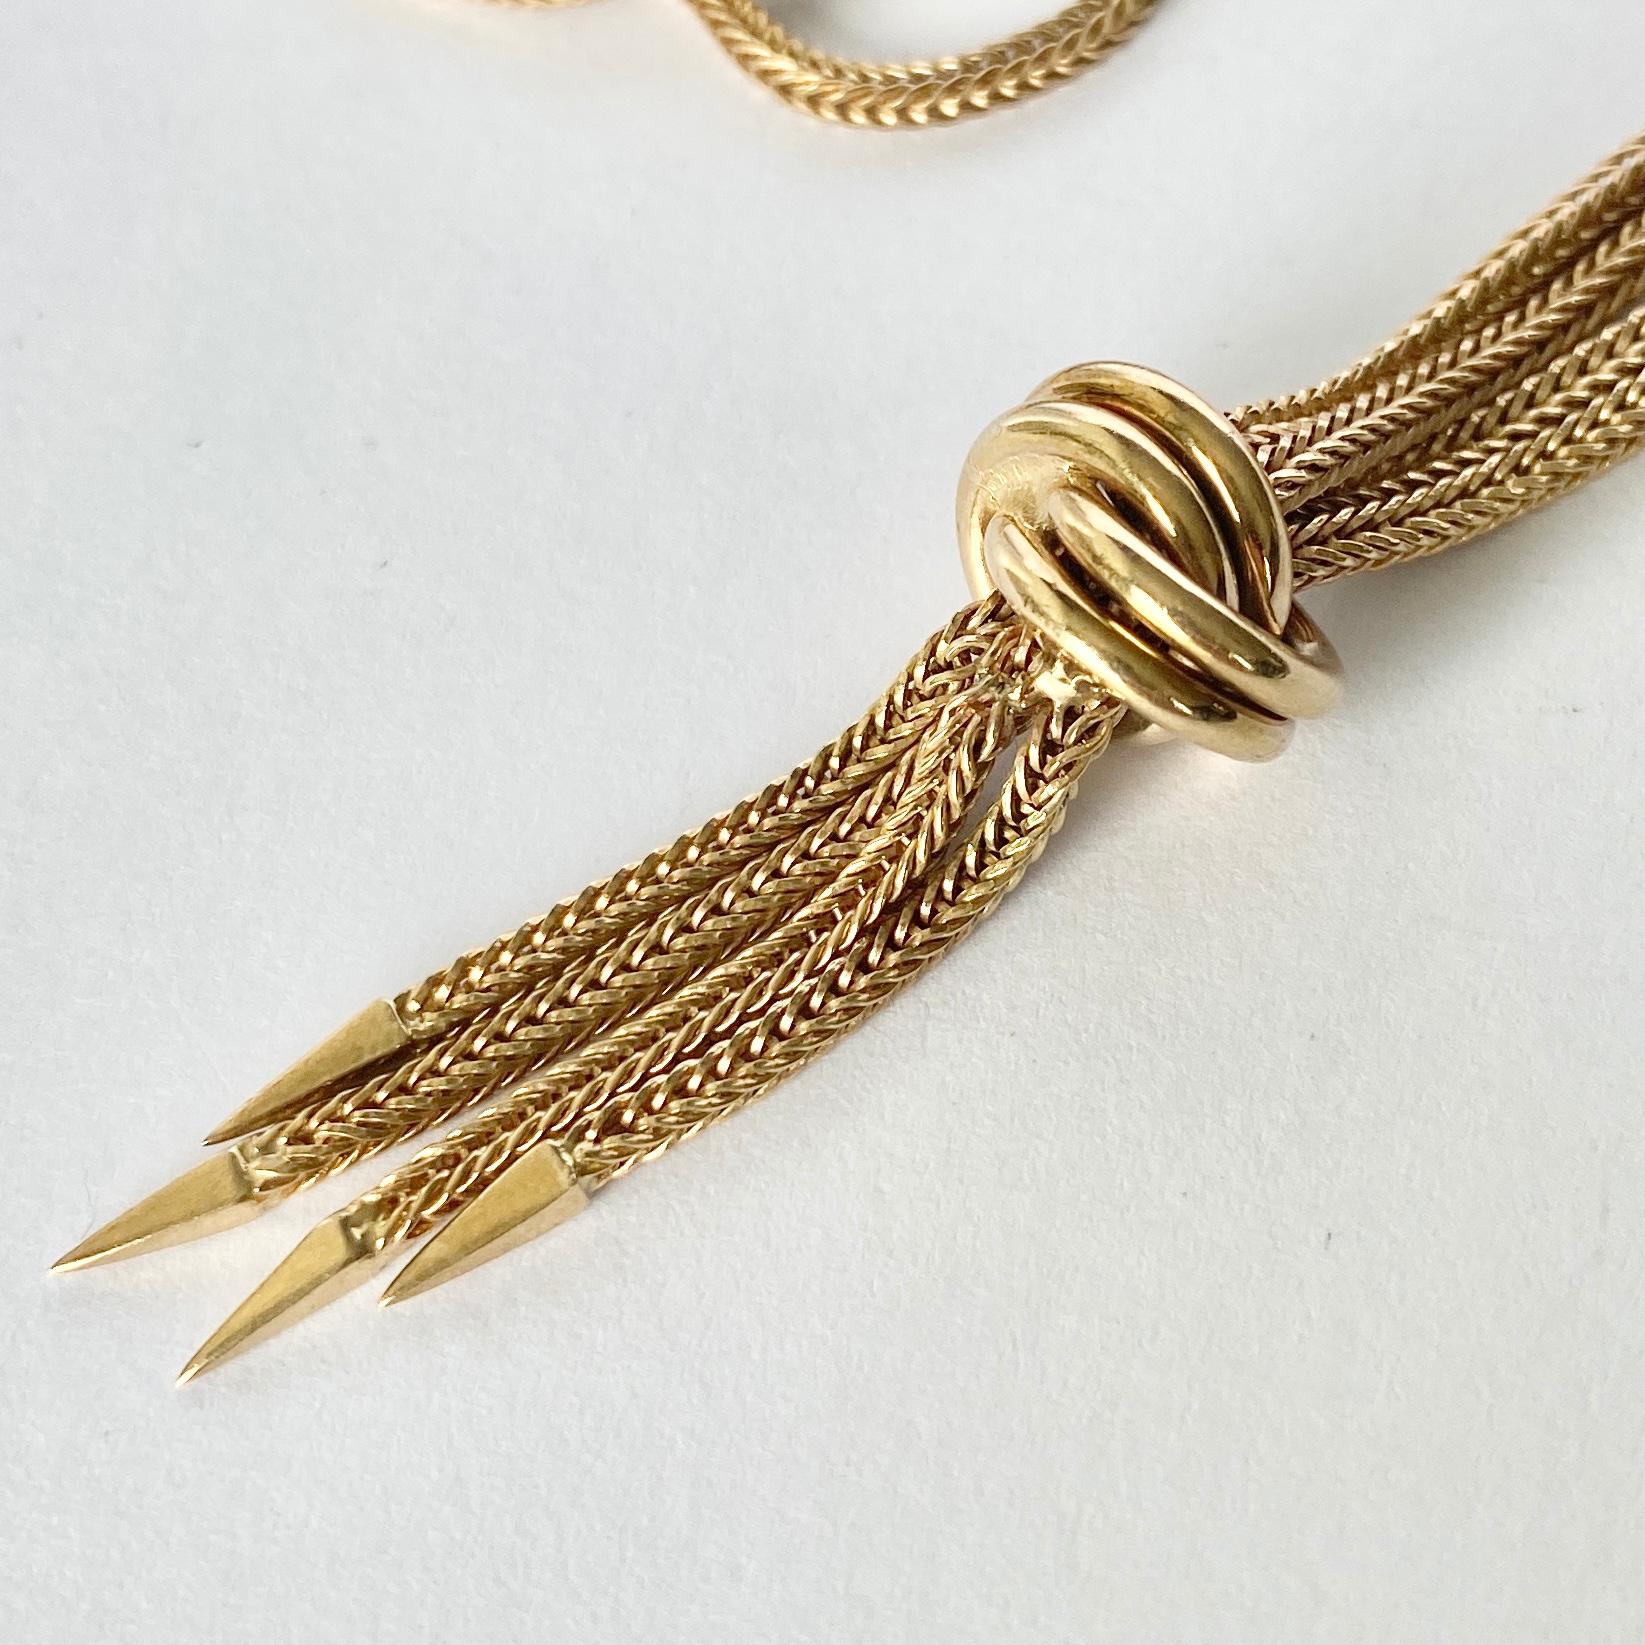 Ce collier en or jaune 9ct est composé d'une chaîne à maillons de type serpent et se fixe à l'aide d'un clip à boulon. Au centre de la chaîne se trouve un nœud en or, puis un gland qui en tombe joliment. 

Longueur : 41 cm 
Largeur de la chaîne :